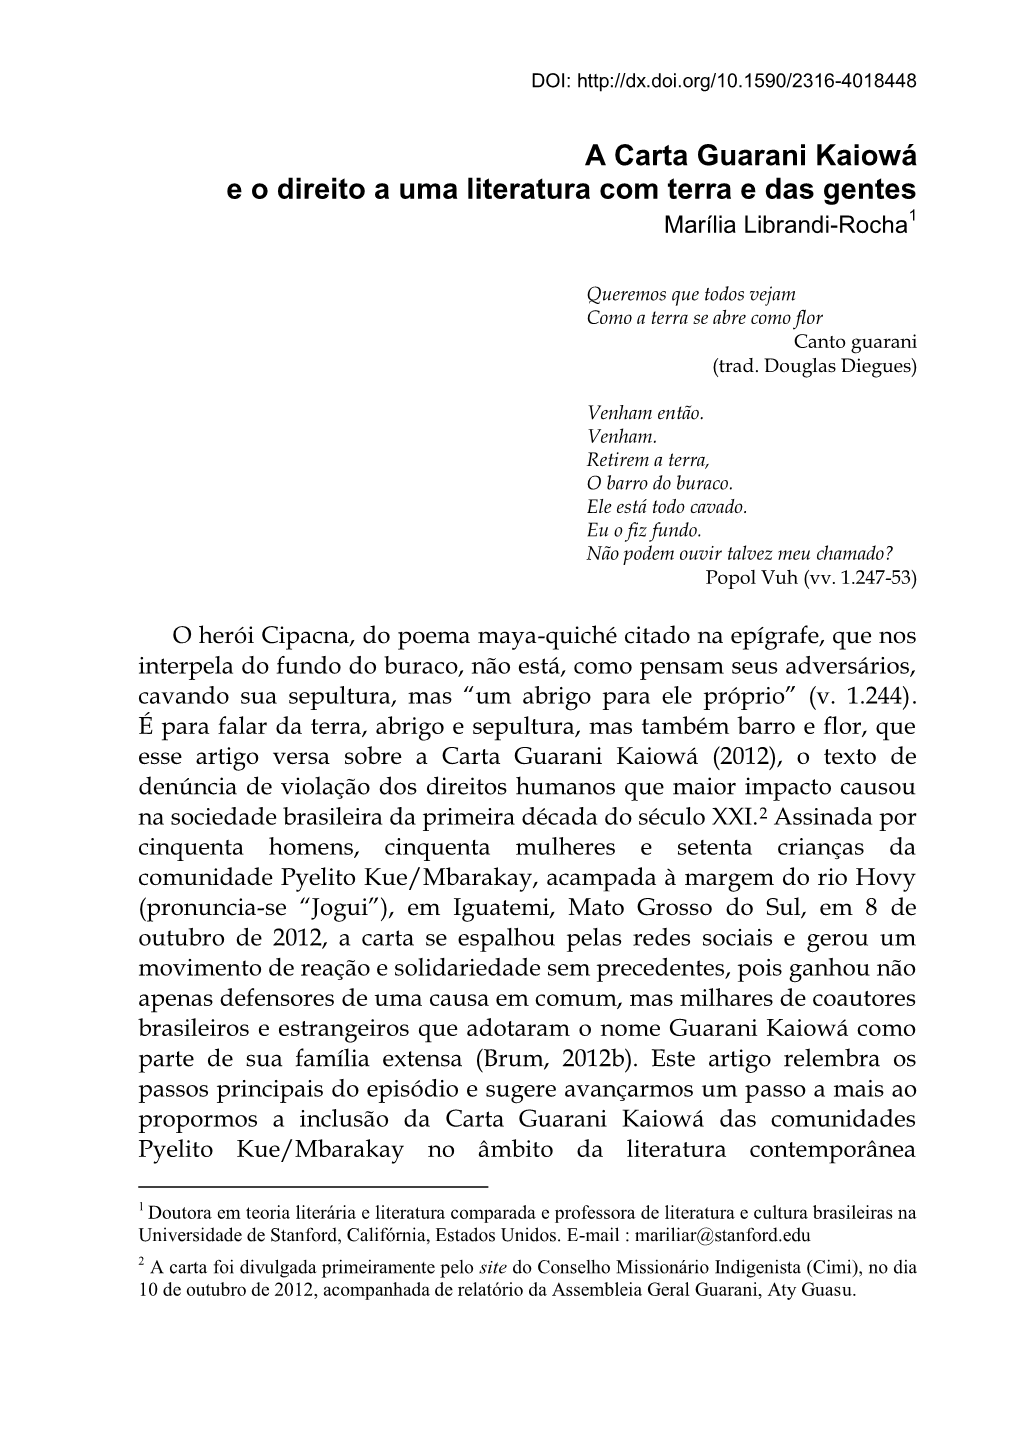 A Carta Guarani Kaiowá E O Direito a Uma Literatura Com Terra E Das Gentes Marília Librandi-Rocha1